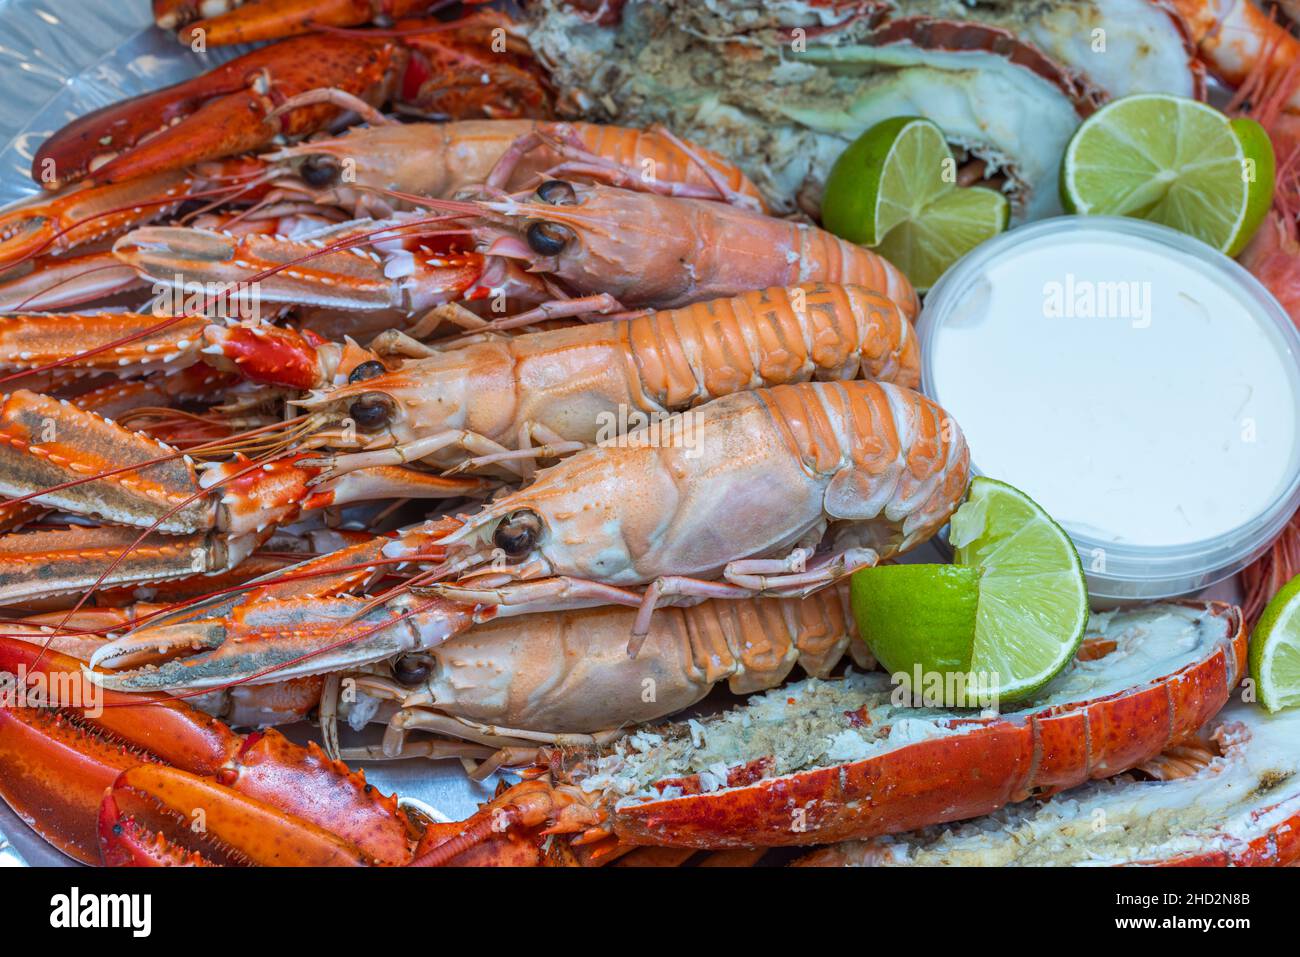 Wunderschöne Aussicht auf den Teller mit Meeresfrüchten. Gesunde Ernährung Konzept. Schweden. Stockfoto